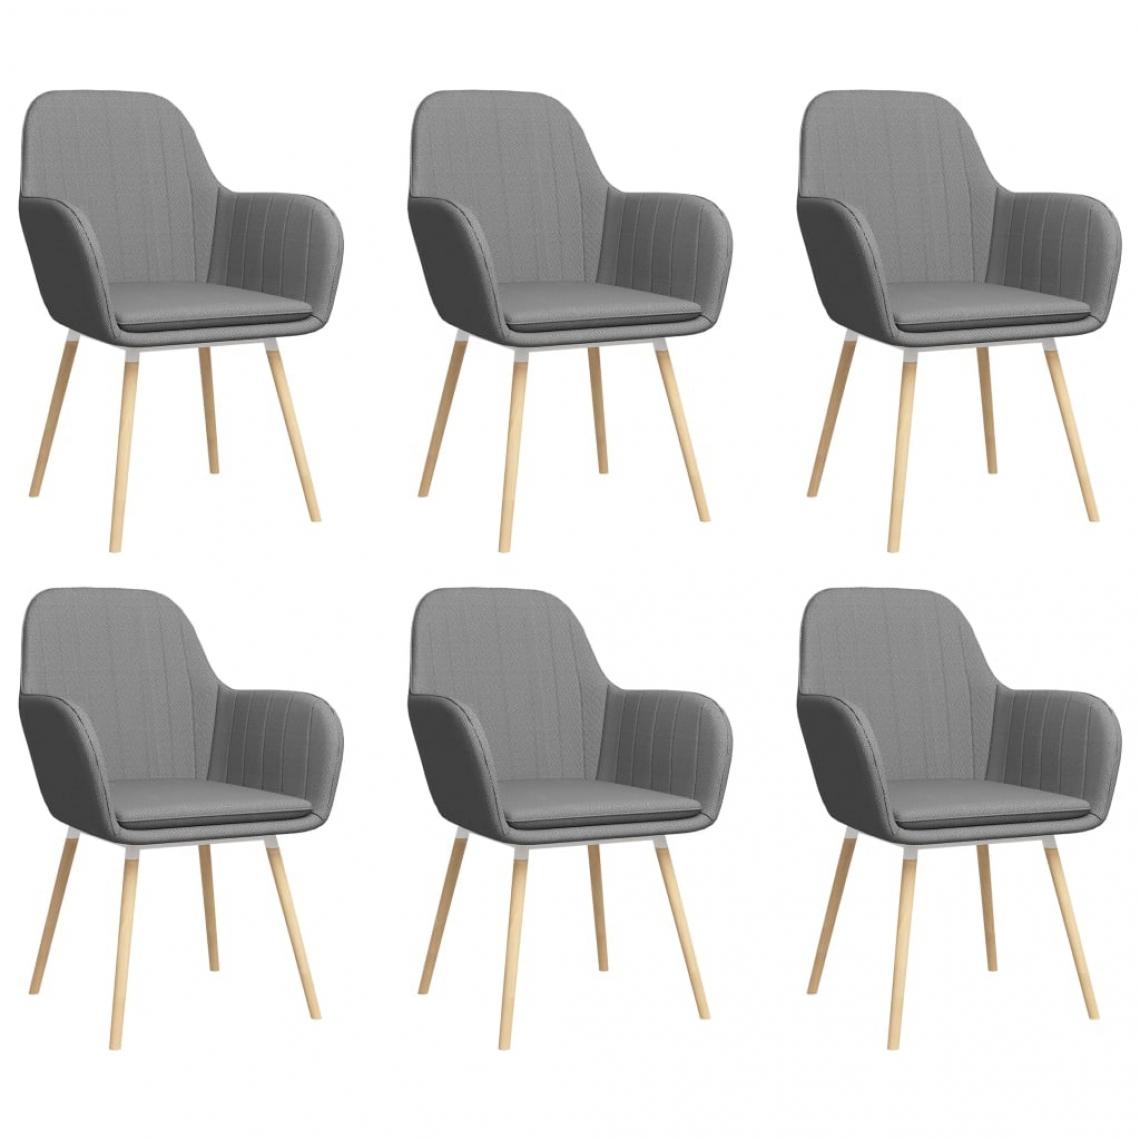 Decoshop26 - Lot de 6 chaises de salle à manger cuisine avec accoudoirs design moderne tissu gris clair CDS022117 - Chaises